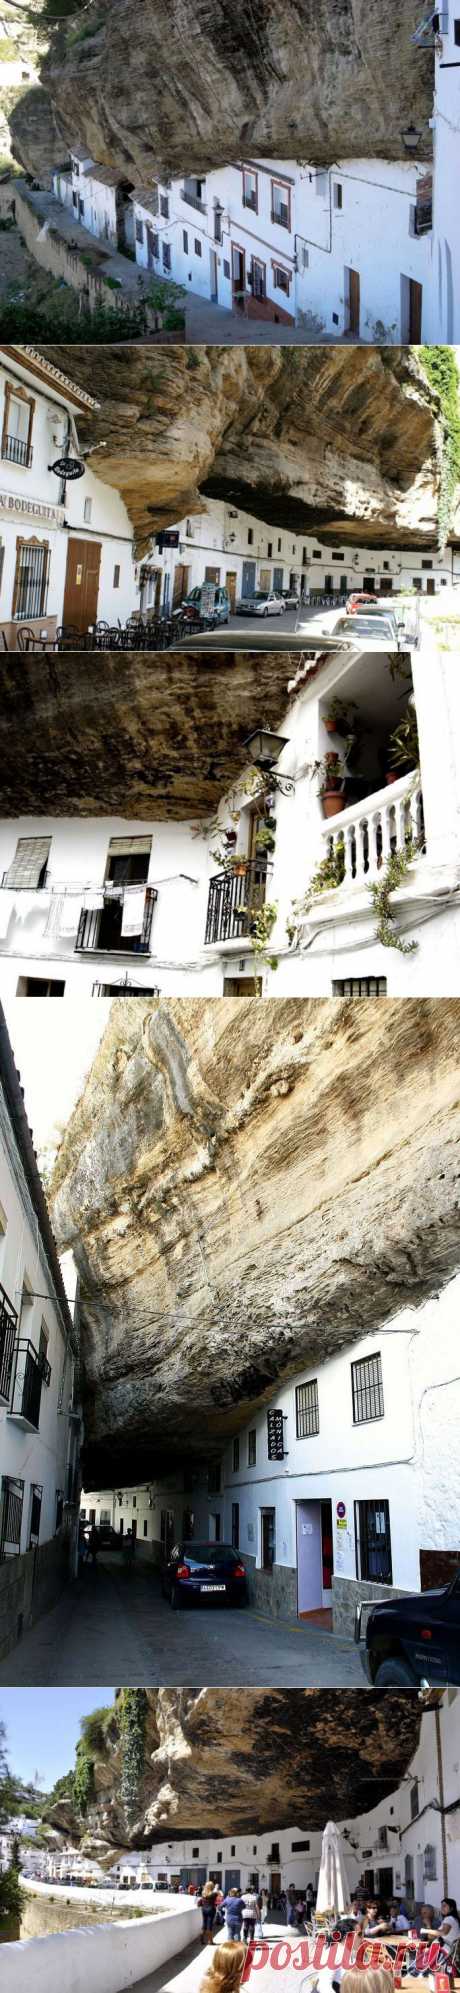 Сетениль де лас Бодегас – город под скалой | ЛЮБИТЕЛИ ПУТЕШЕСТВОВАТЬ